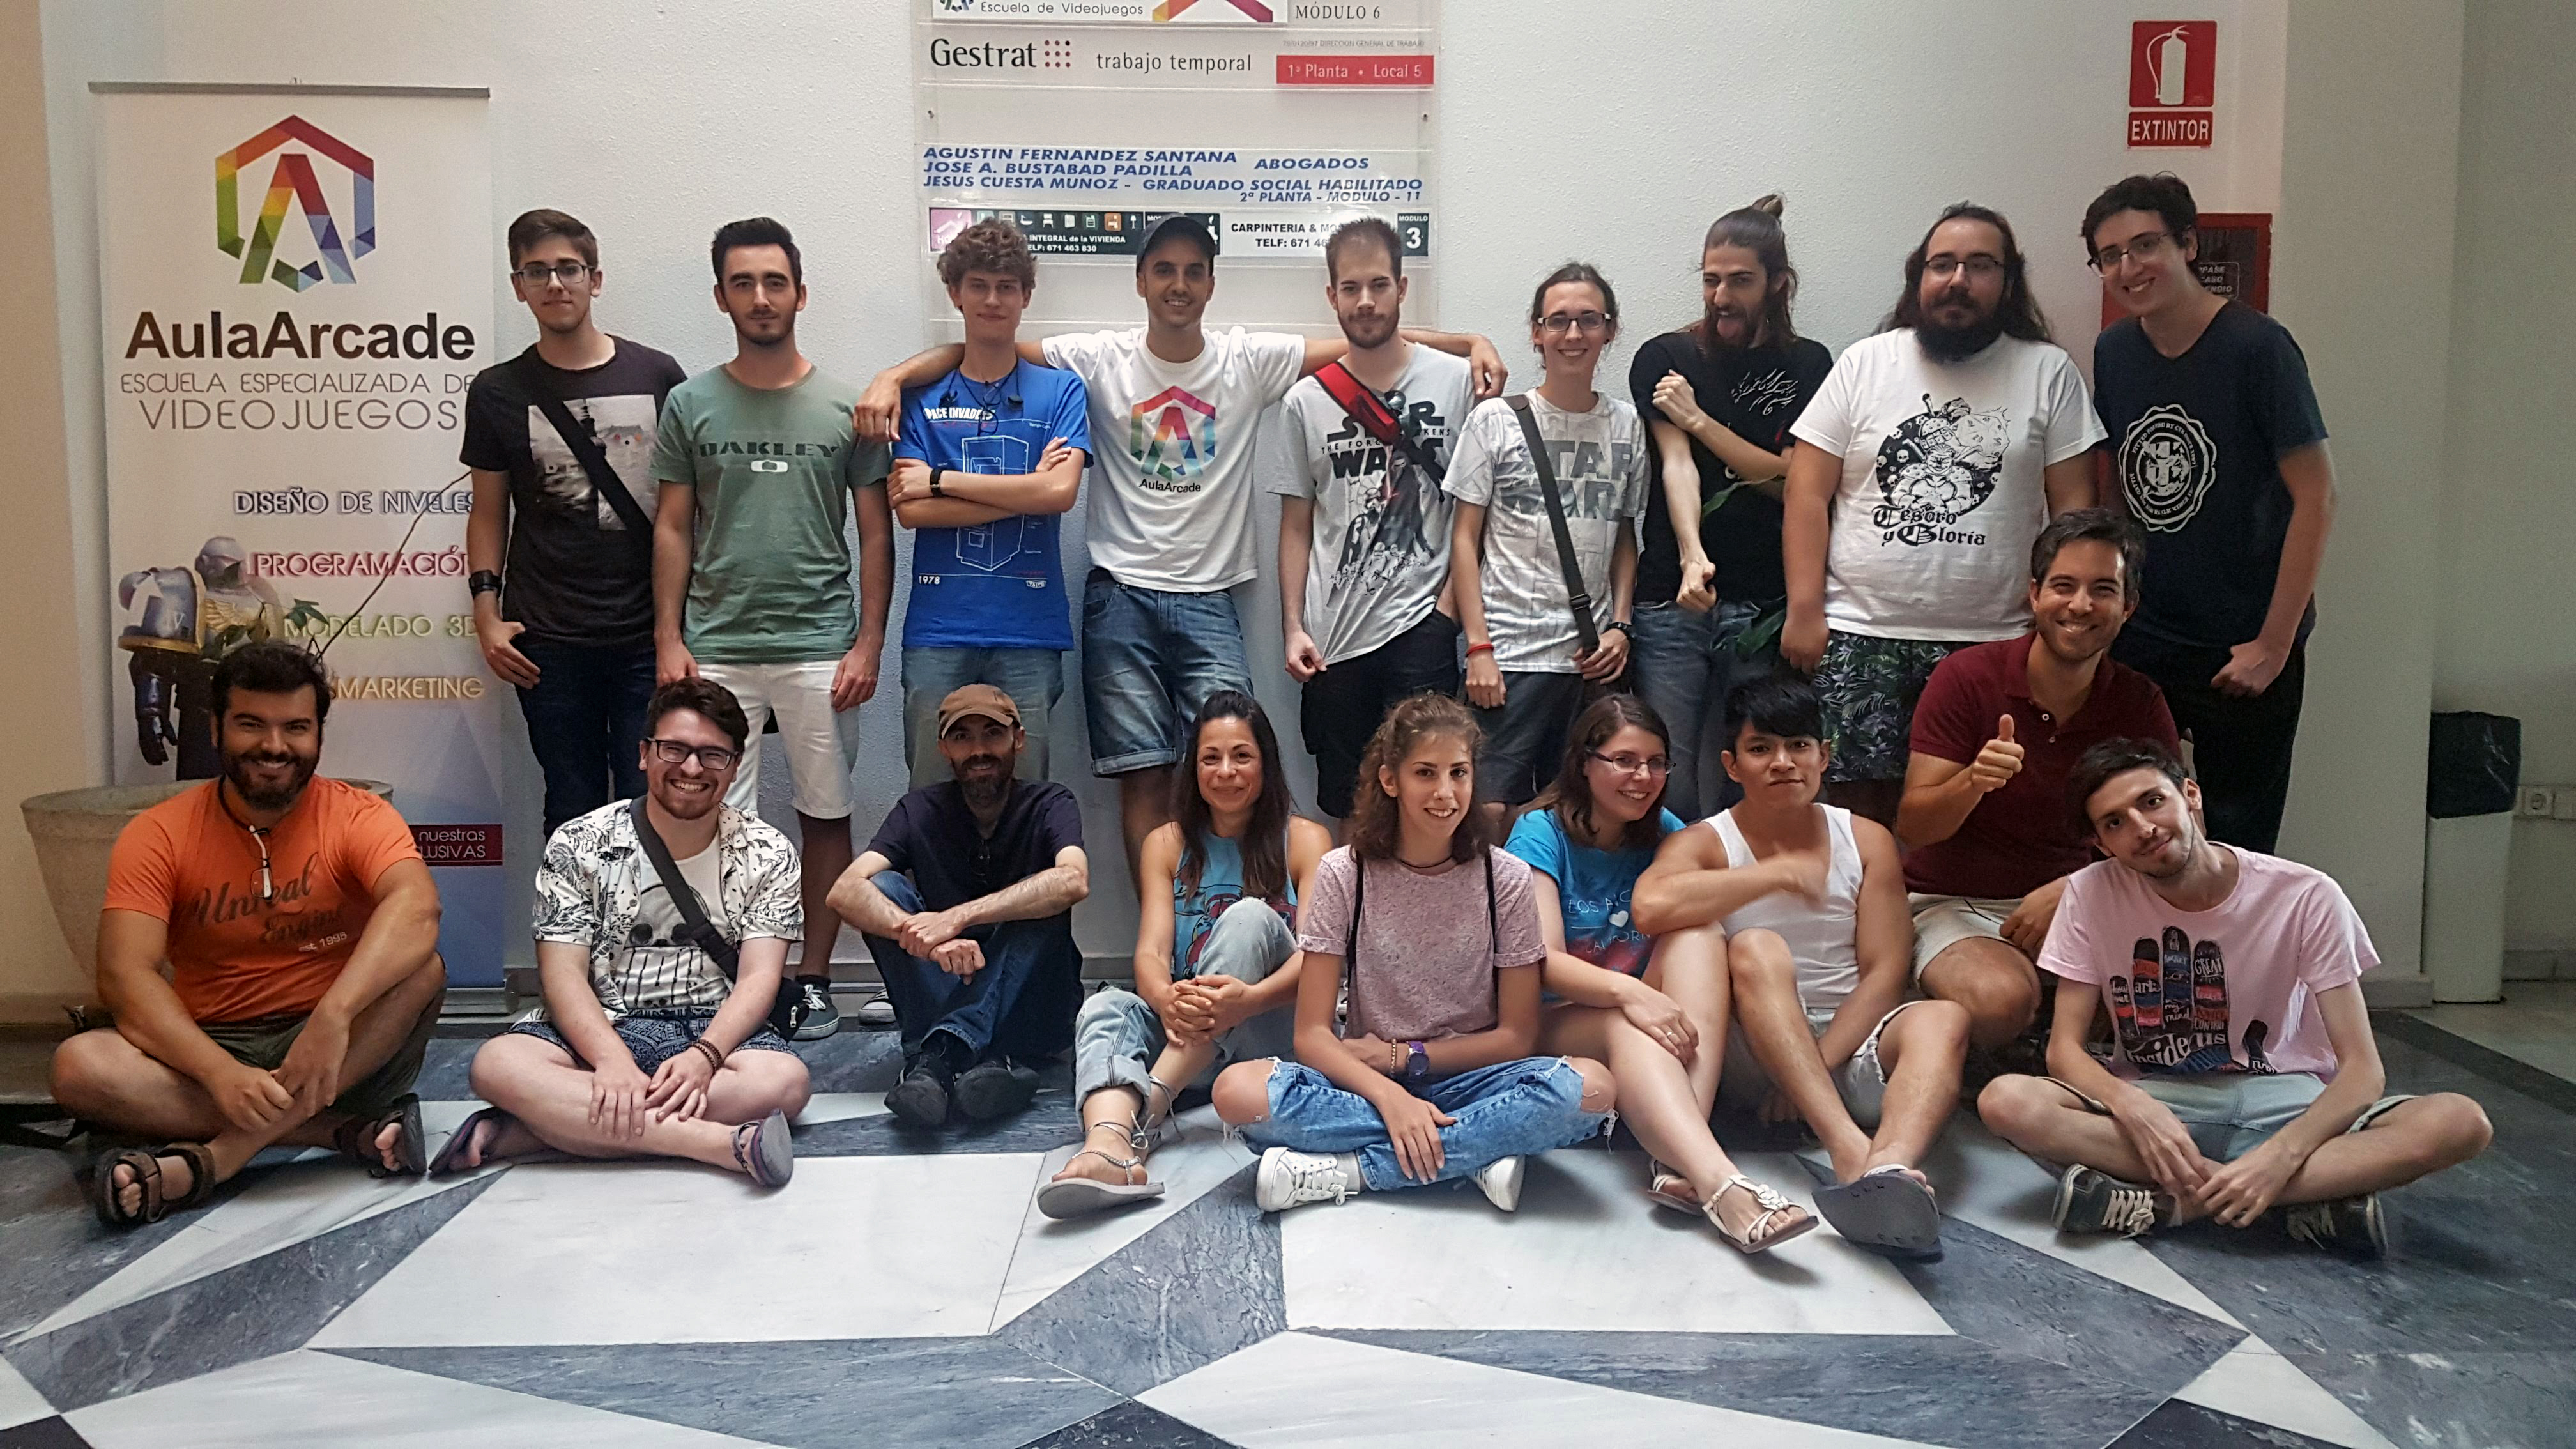 alumnos y alumnas participantes en la AulaArcadejam6 de Sevilla